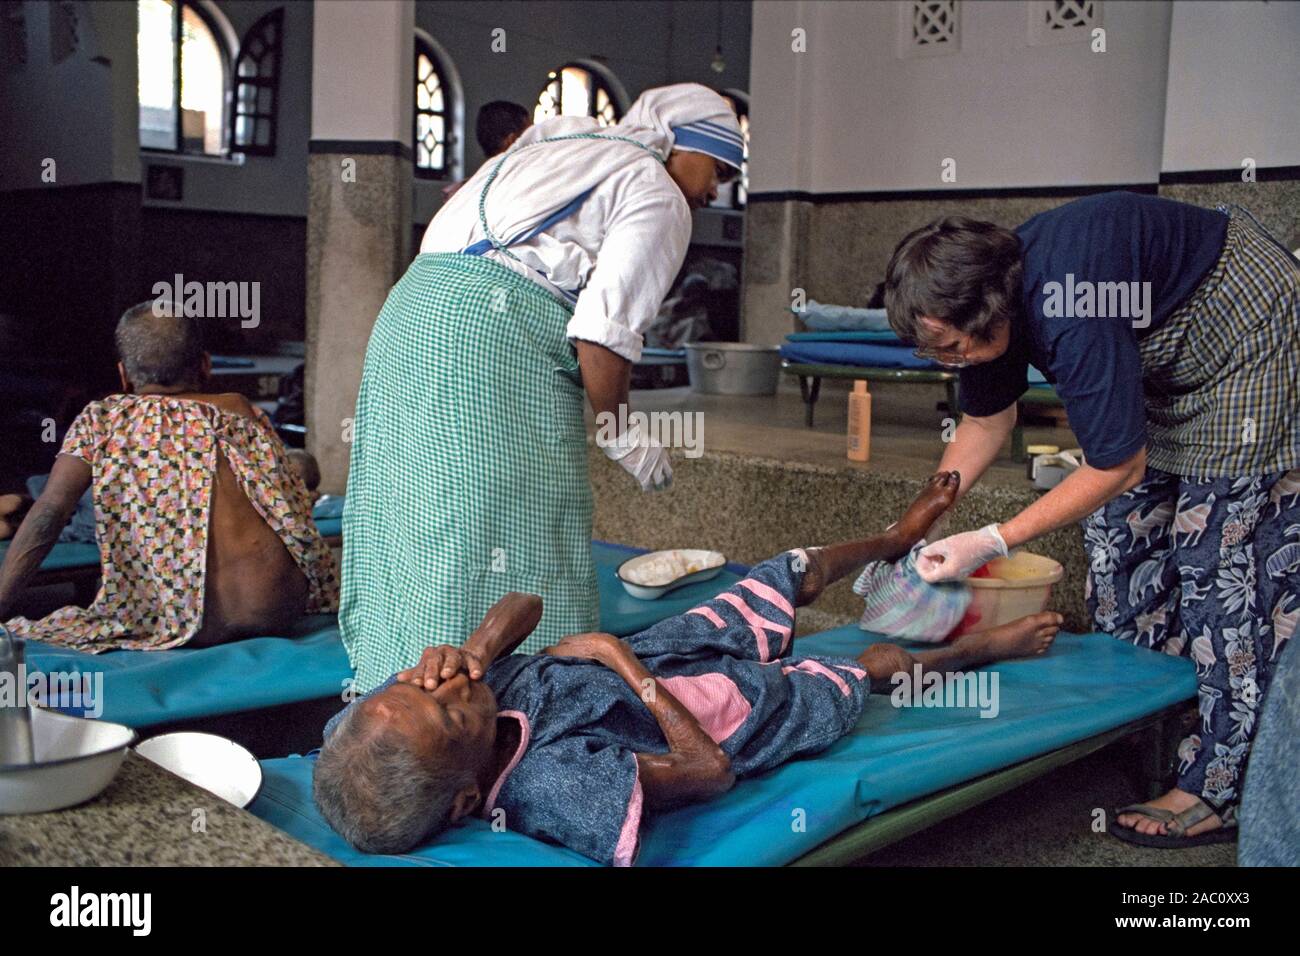 Freiwillige badet Bein eines Patienten bei der Mutter Teresa Haus für Sterbende in Kalkutta, Indien Stockfoto